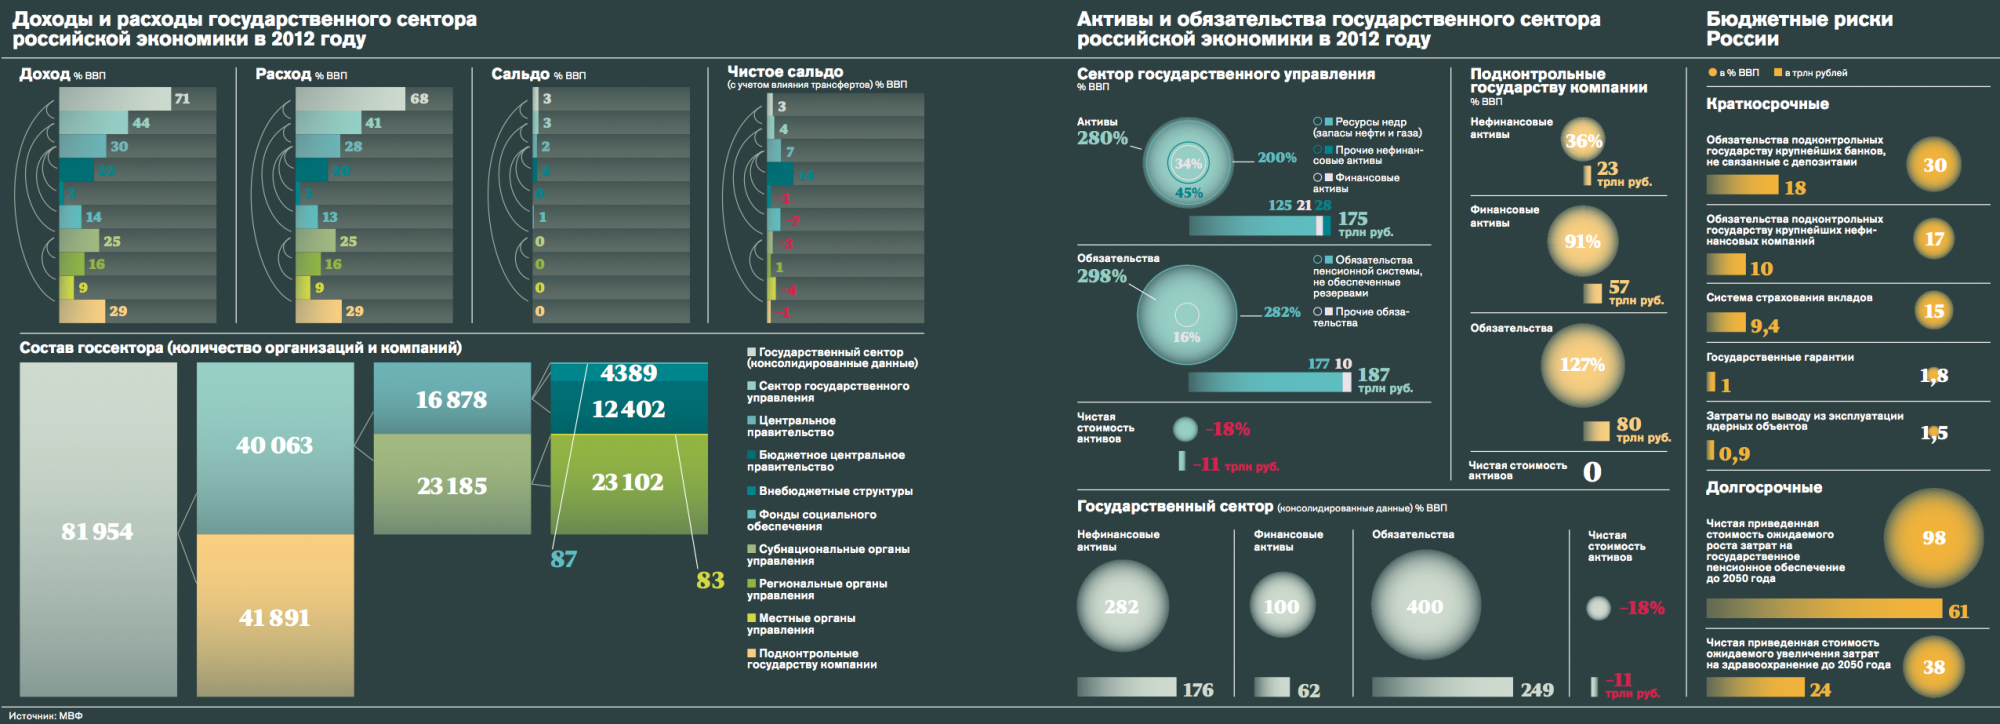 Экономика 2012 года. Нефтегазовые доходы в ВВП России.